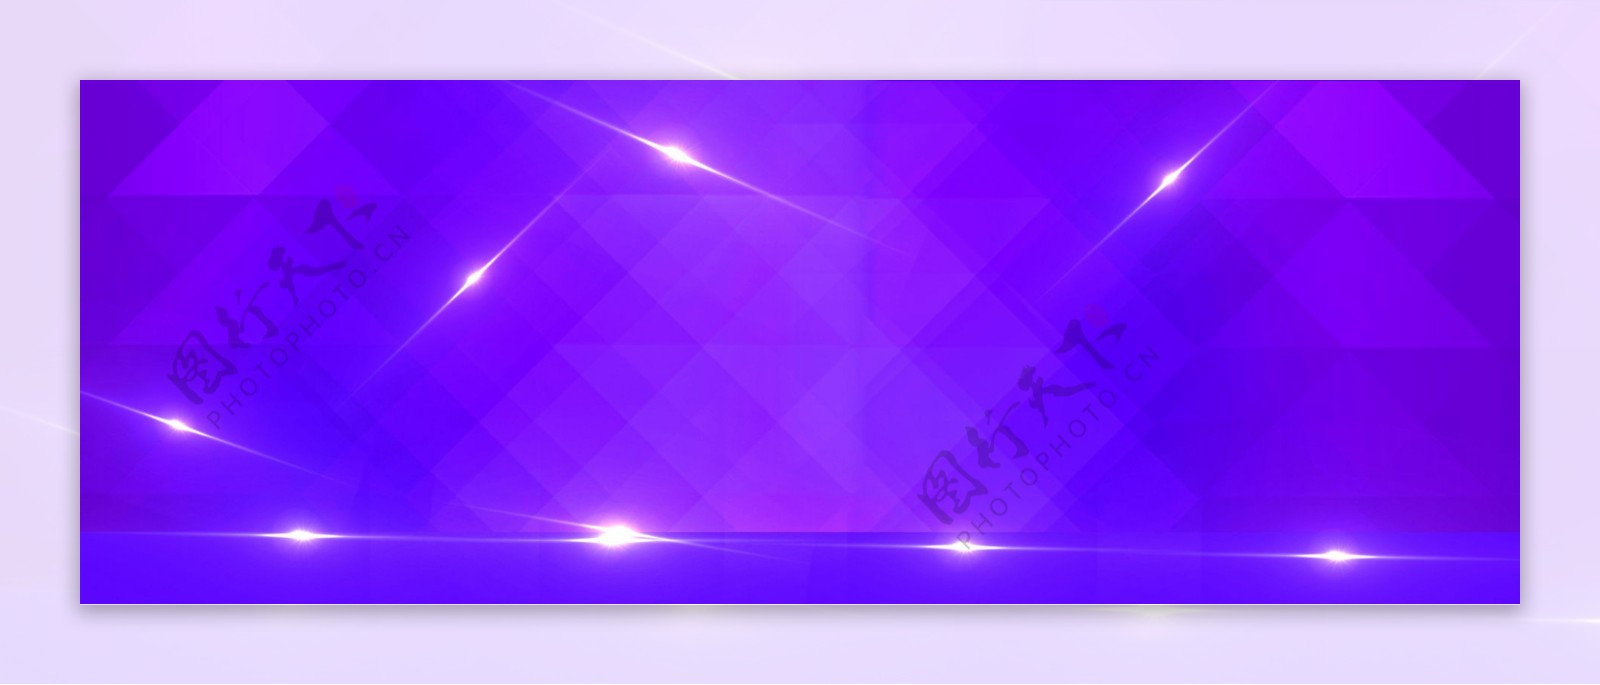 紫色炫酷立体banner